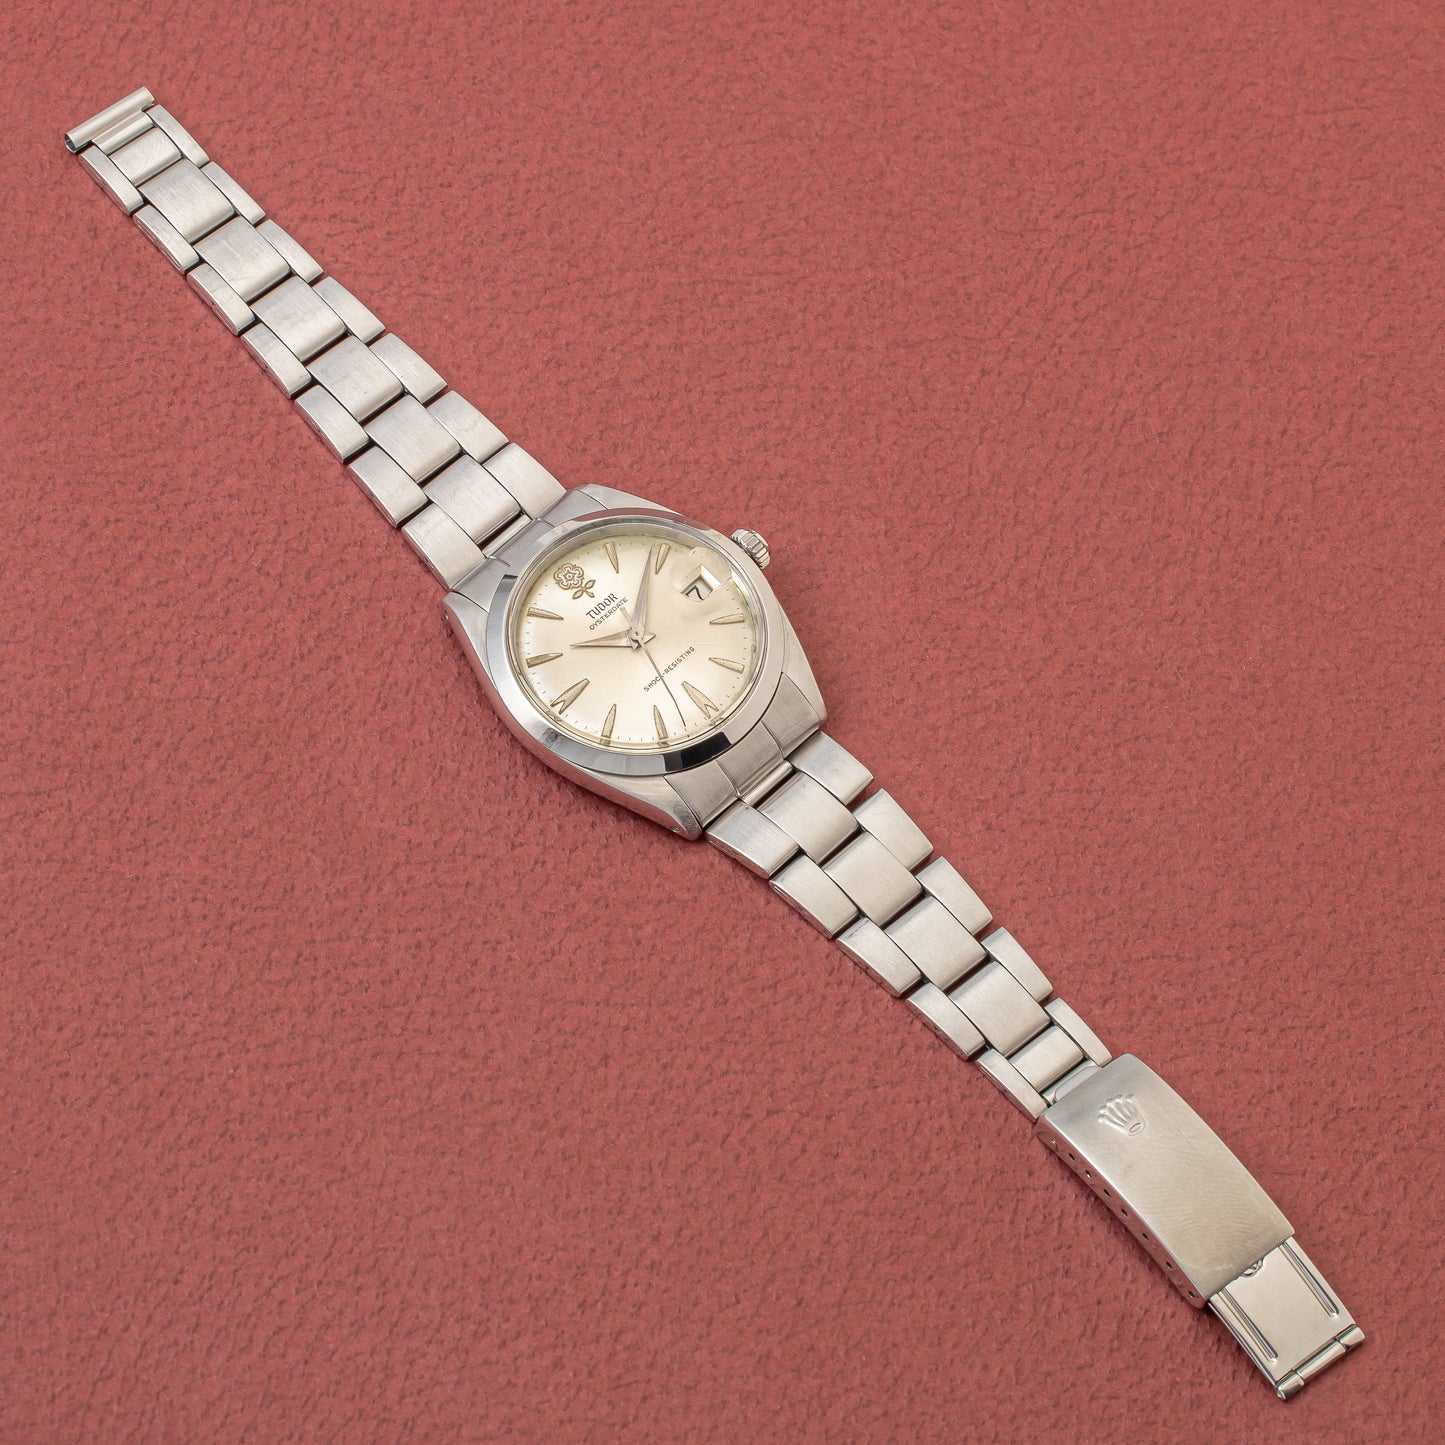 チューダー デカバラ オイスターデイト 1962年製 ロレックスオイスターブレス付き オリジナルダイヤル